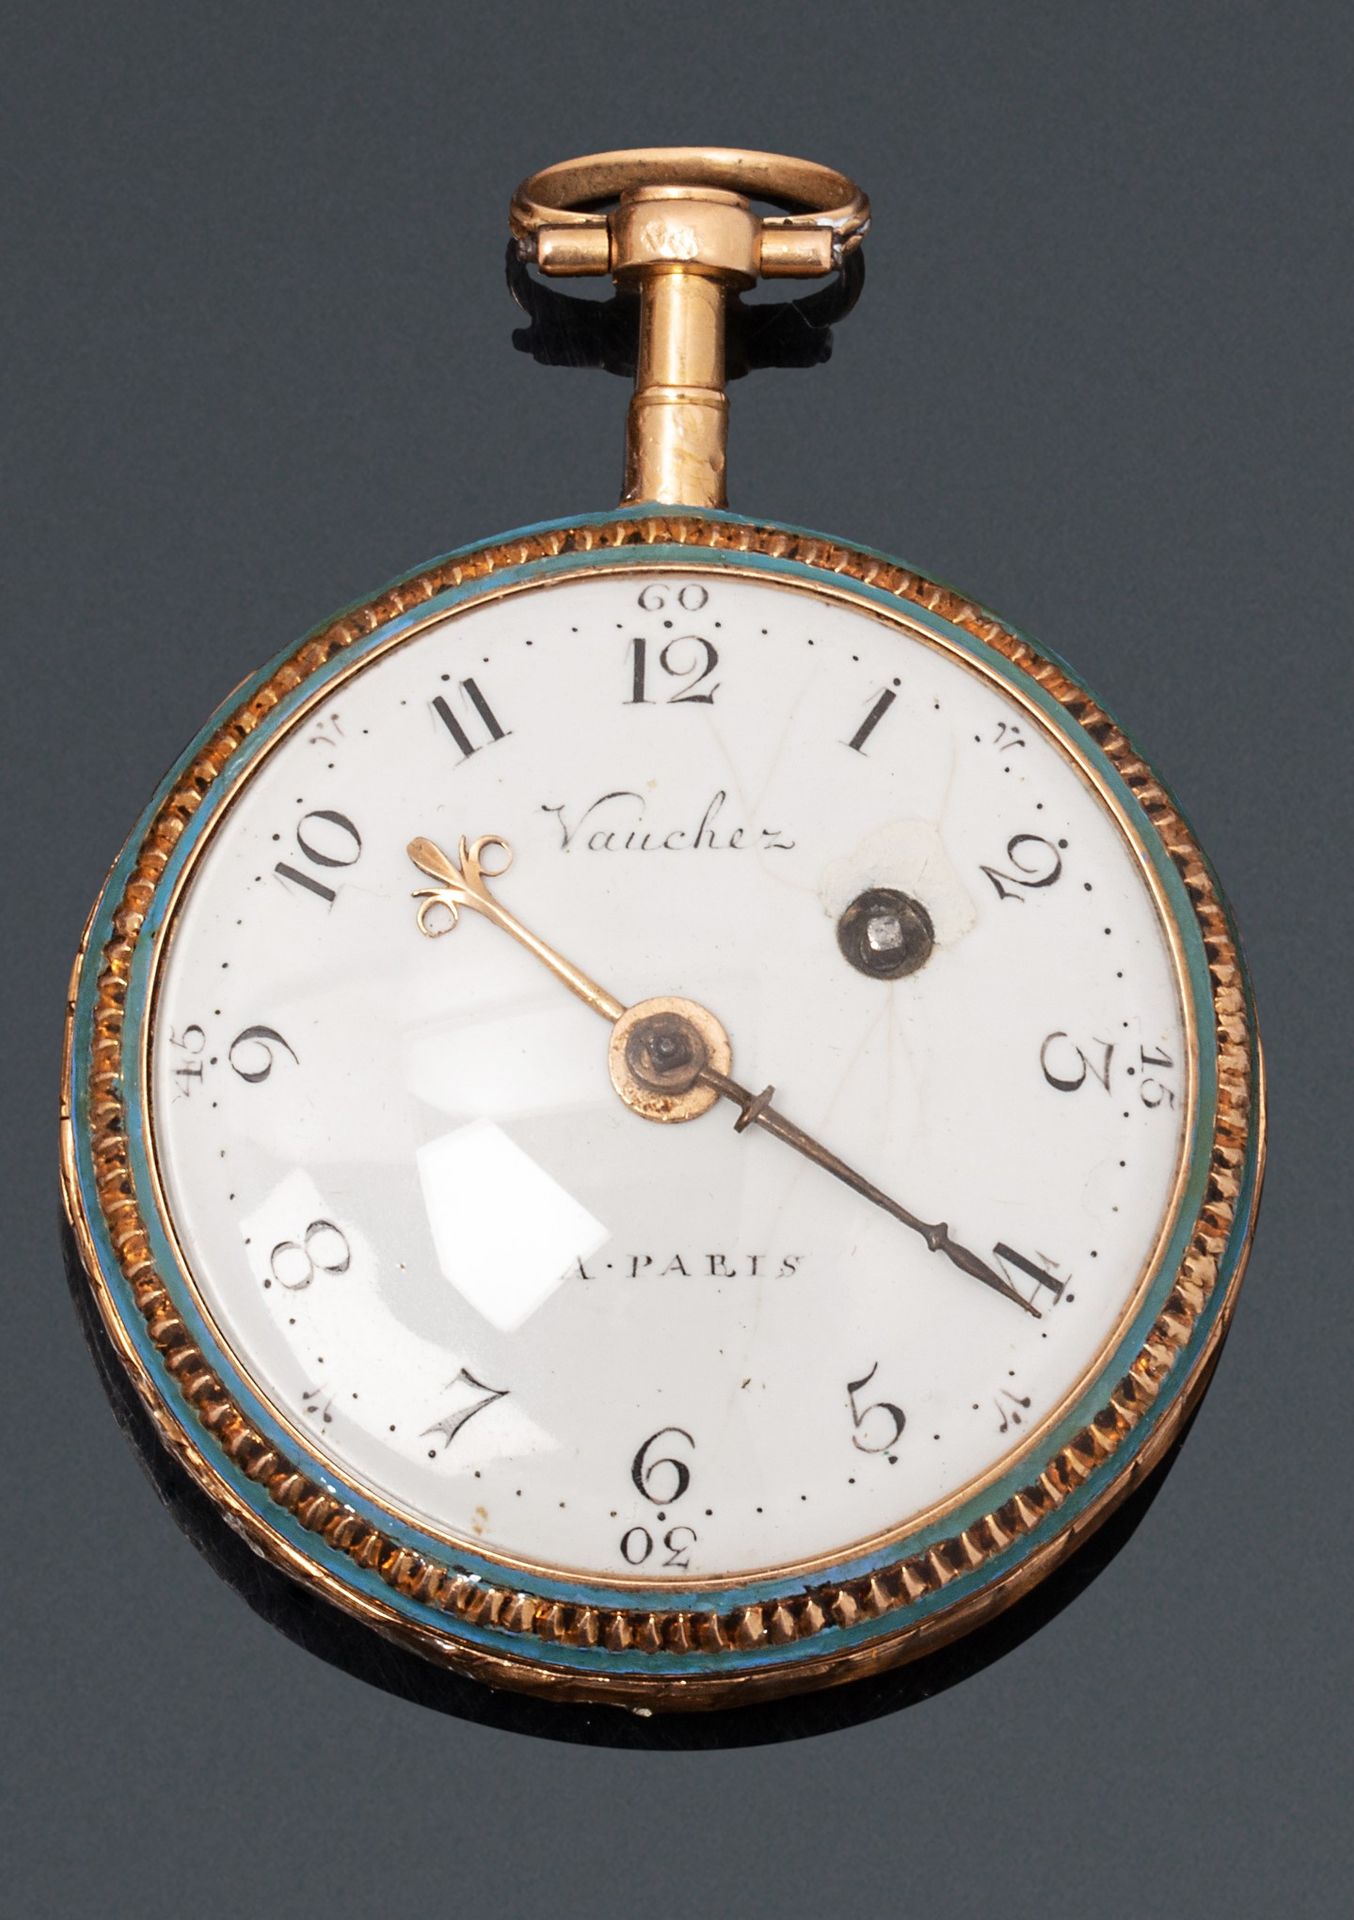 Null VAUCHEZ in Paris

Ende des 18. Jahrhunderts.

Uhr aus emailliertem Gold. Ru&hellip;